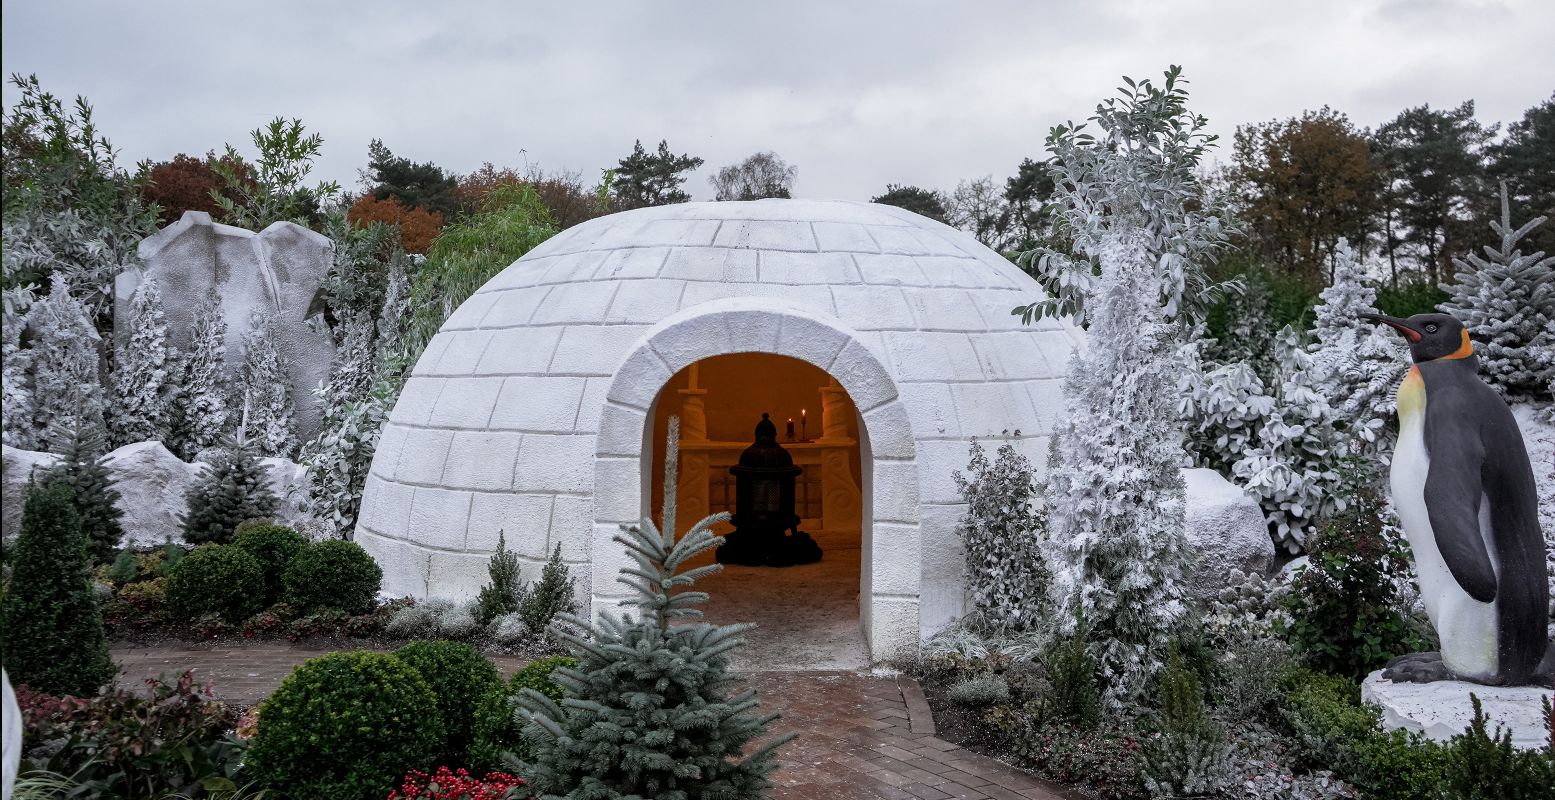 Een kacheltje en mooie lichtjes maken de iglo in de wintertuin beregezellig. Foto: 't Veluws Zandsculpturenfestijn